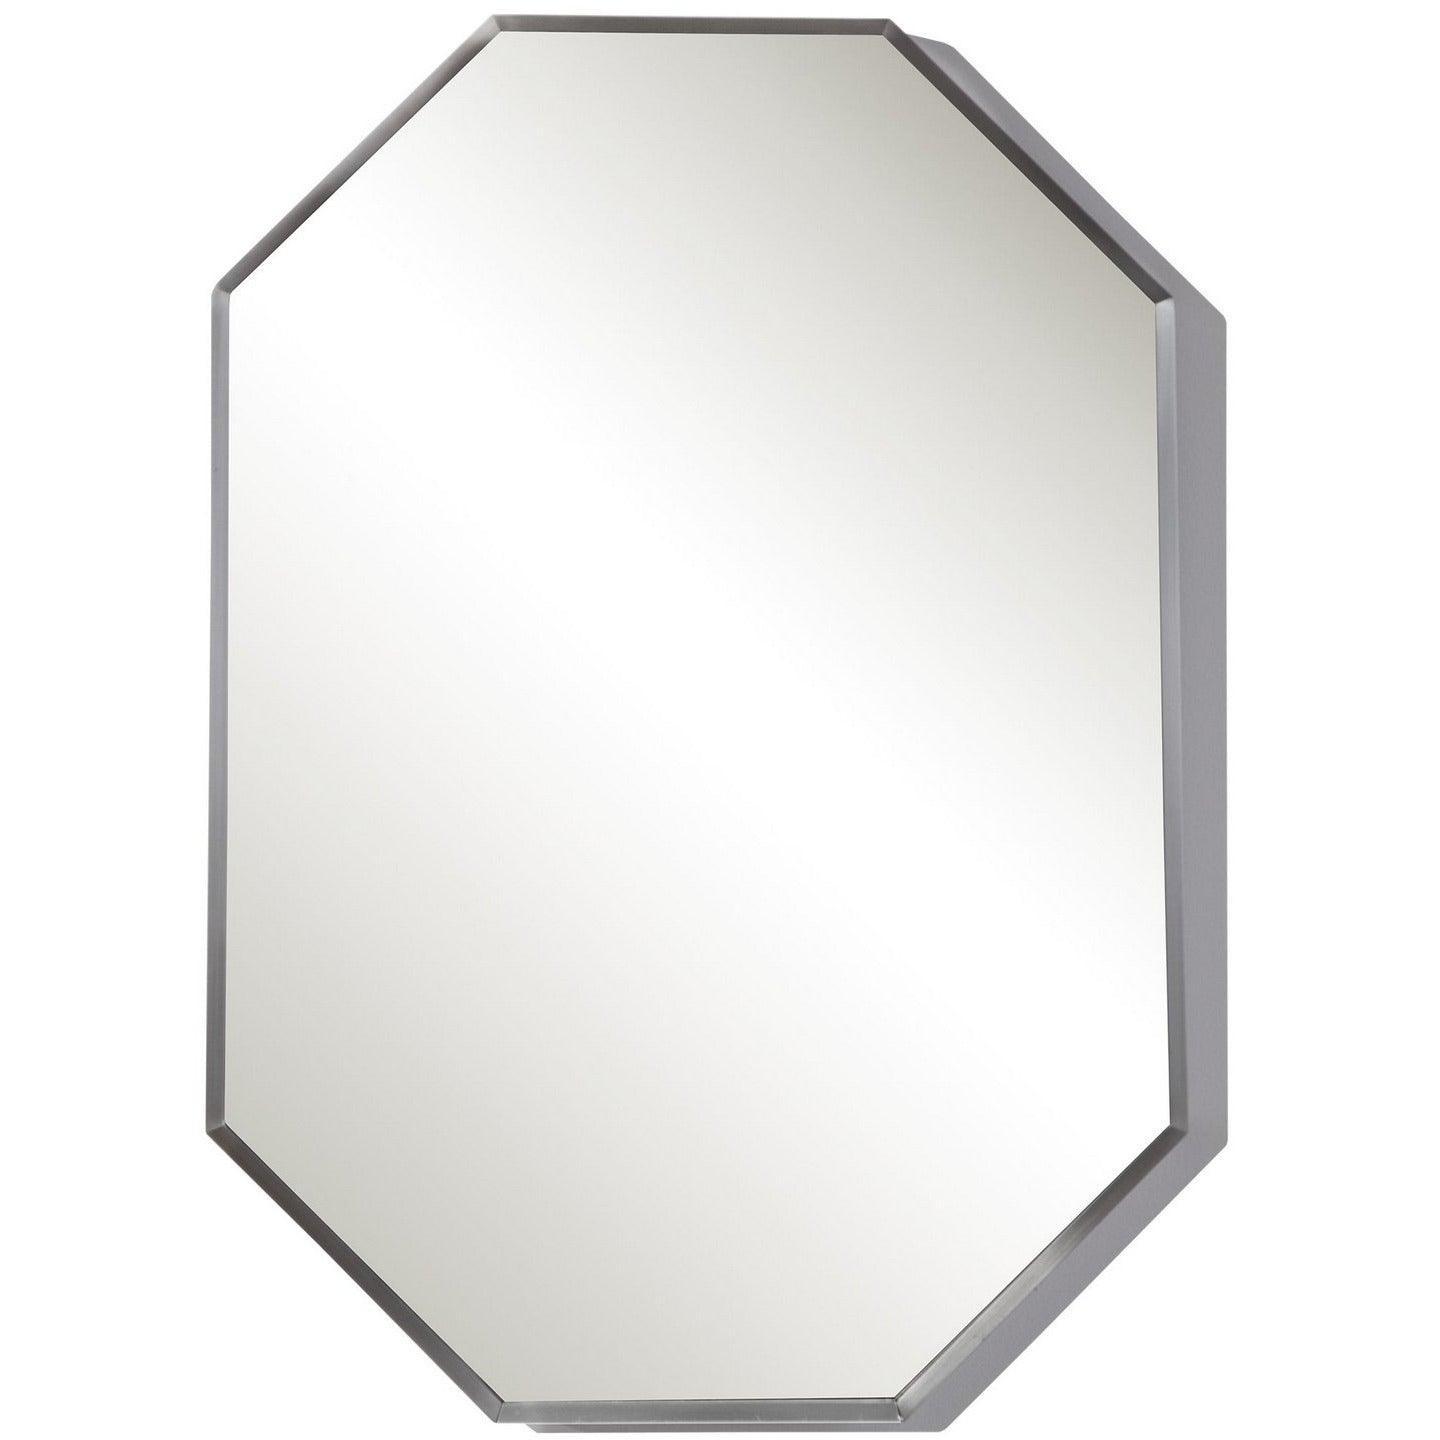 The Uttermost - Stuartson Mirror - 09653 | Montreal Lighting & Hardware